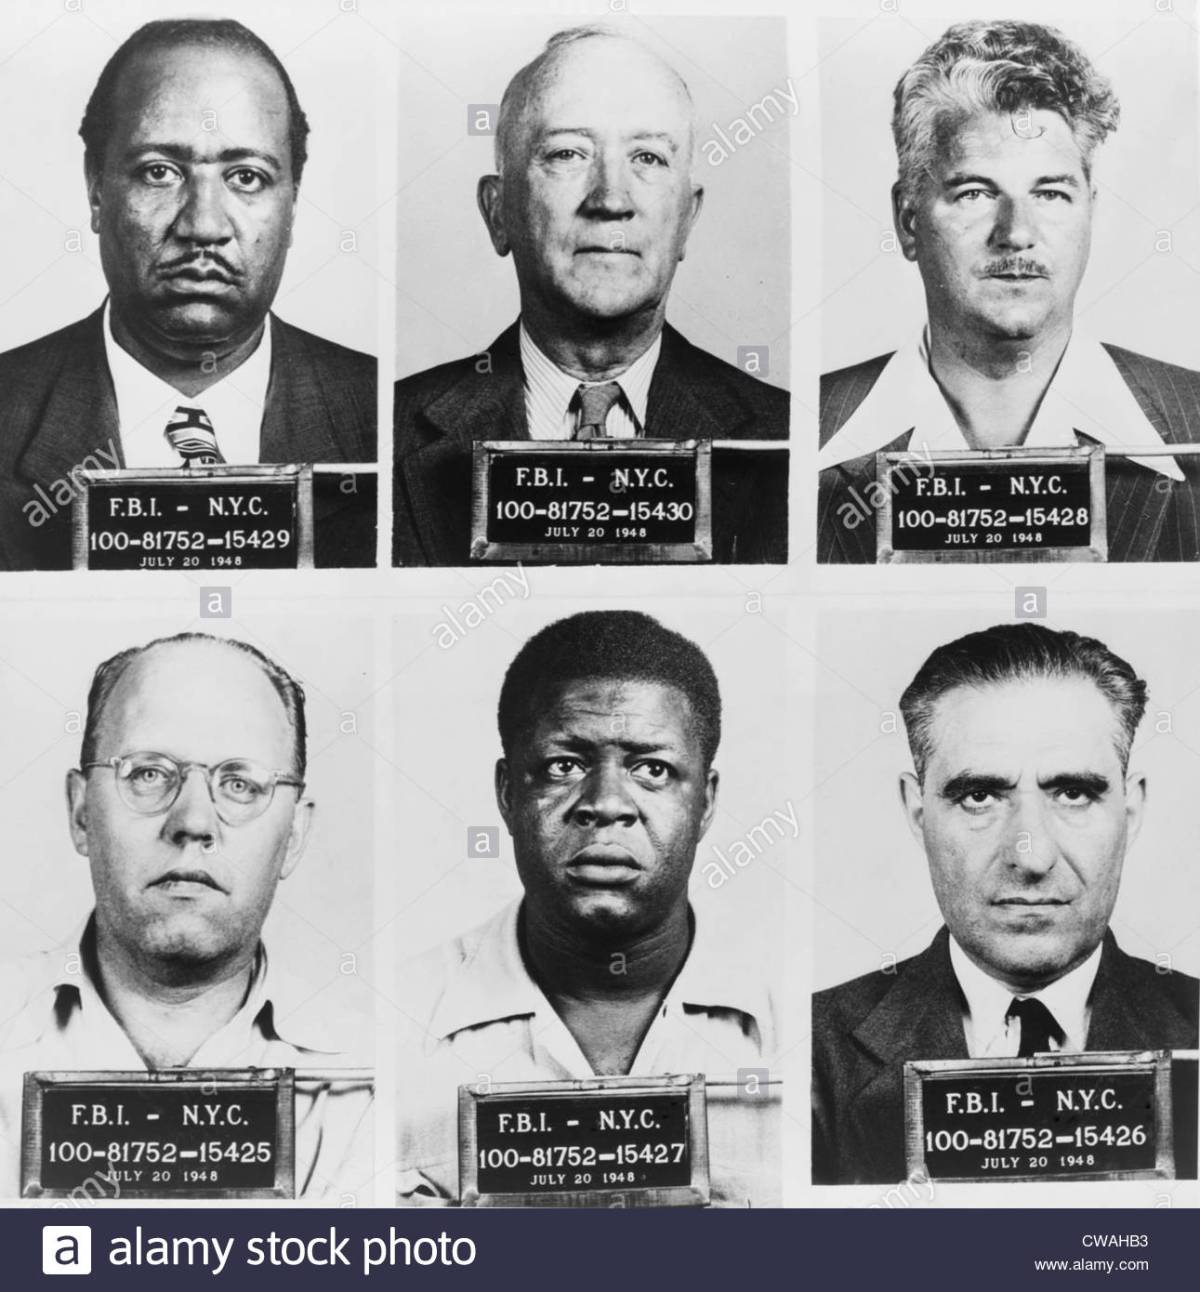 21 DE JULIO DE 1948: COMUNISTAS DETENIDOS EN EE.UU. POR LEY SMITH